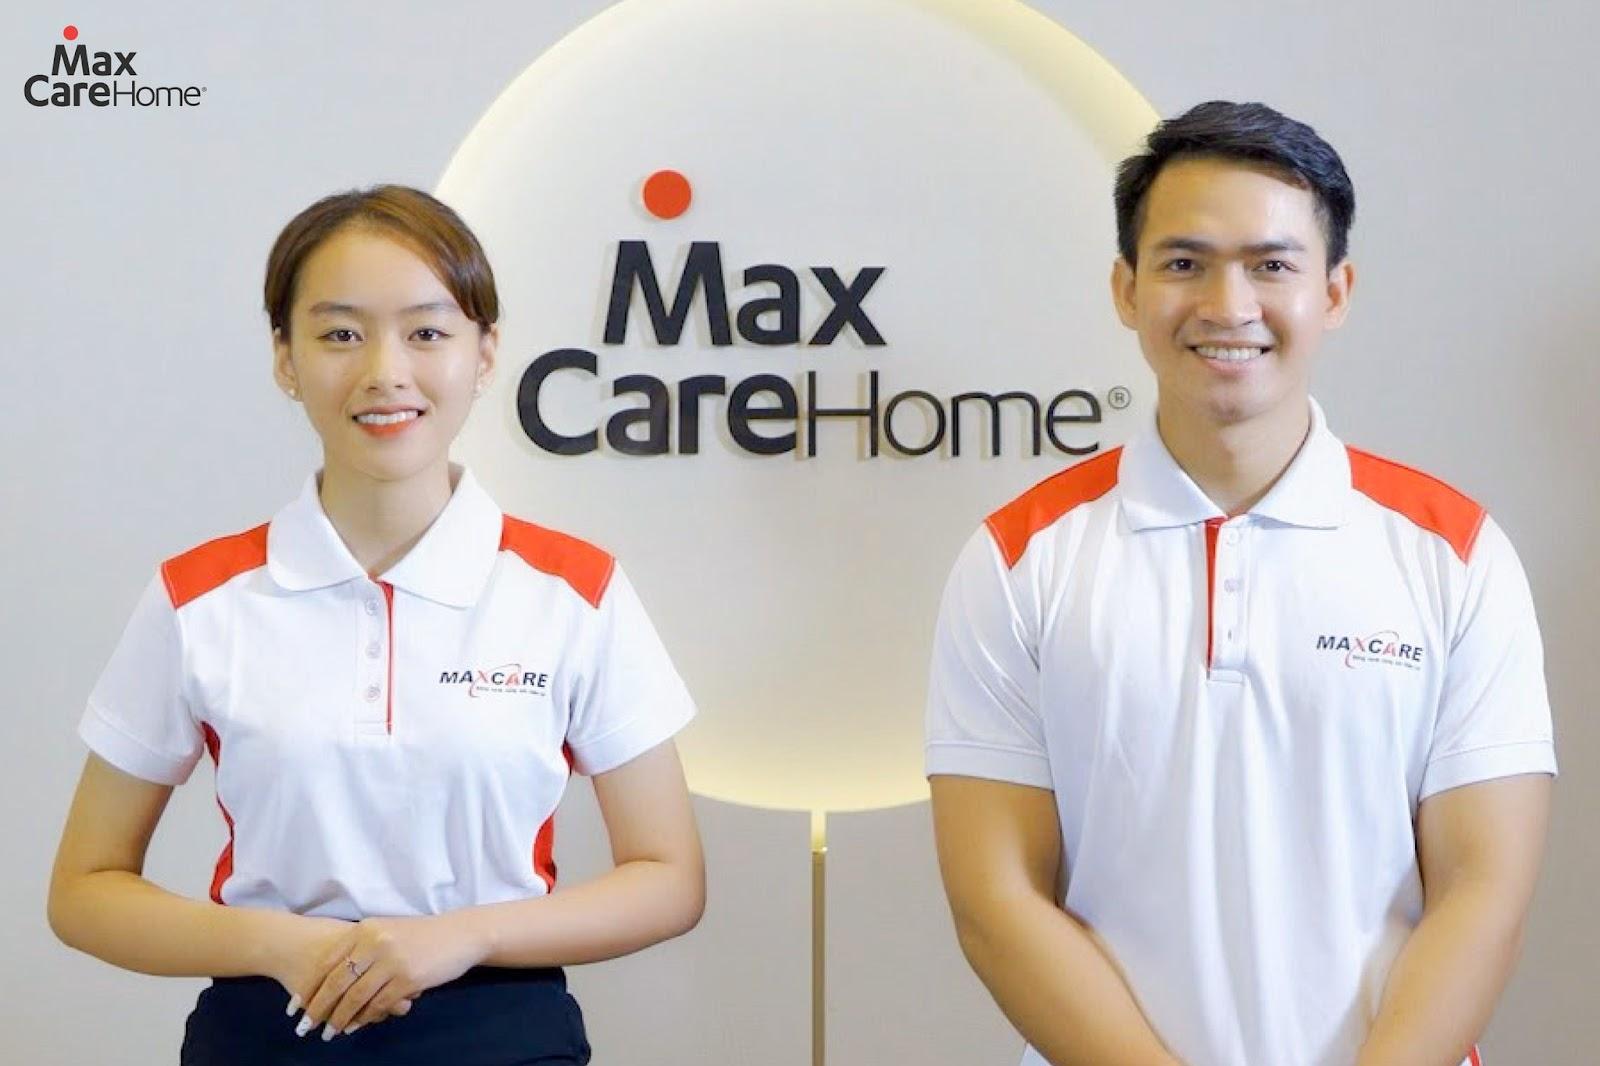 Maxcare-home